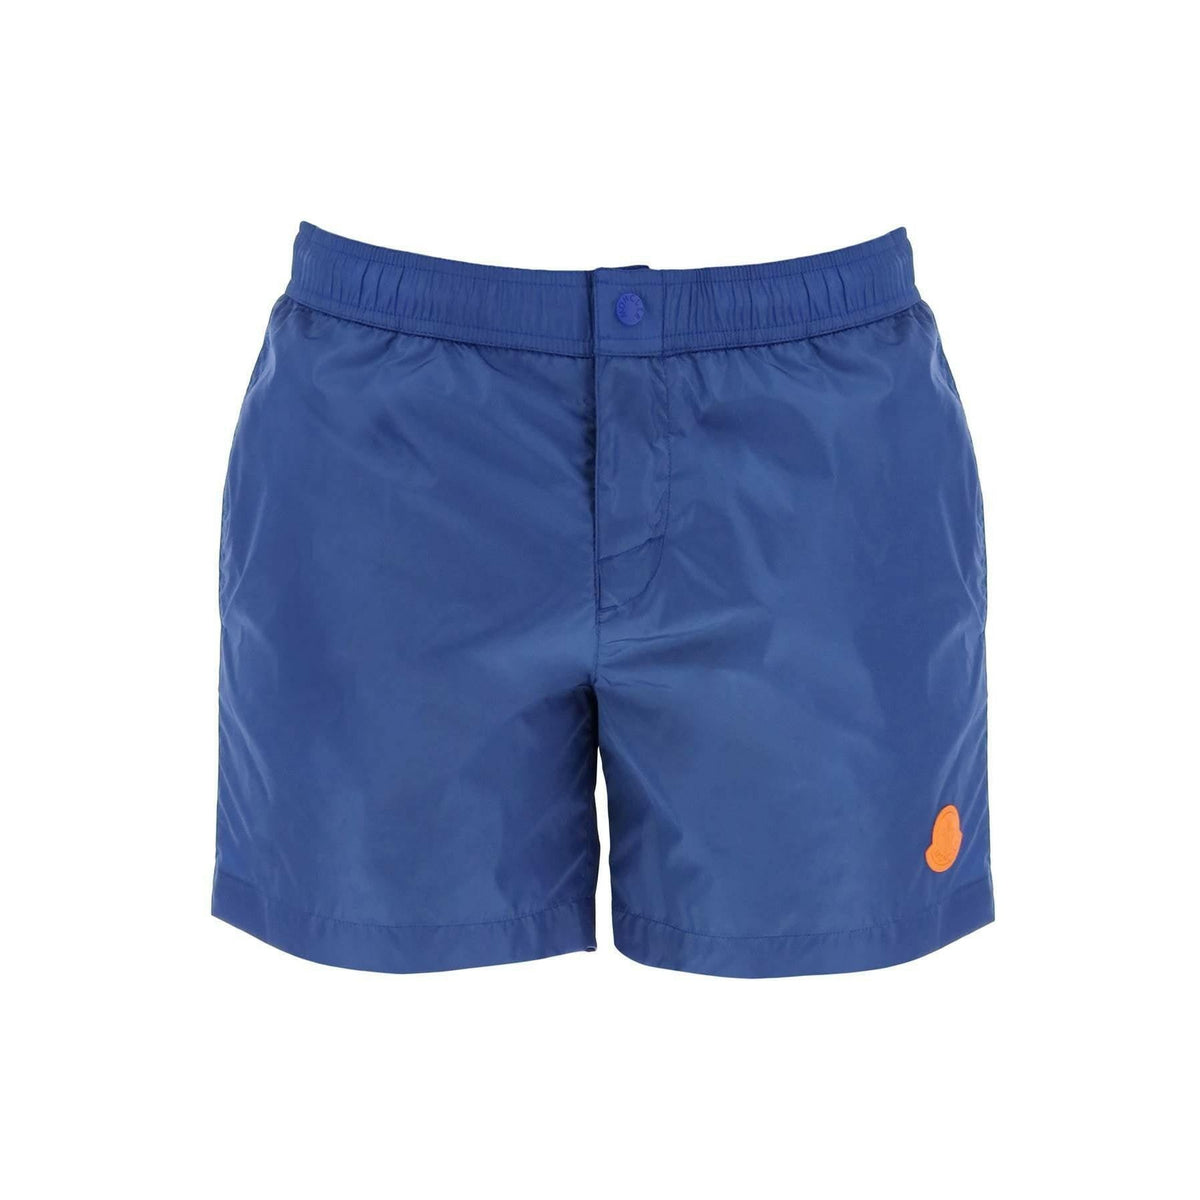 MONCLER - Blue Swim Technical Nylon Shorts - JOHN JULIA